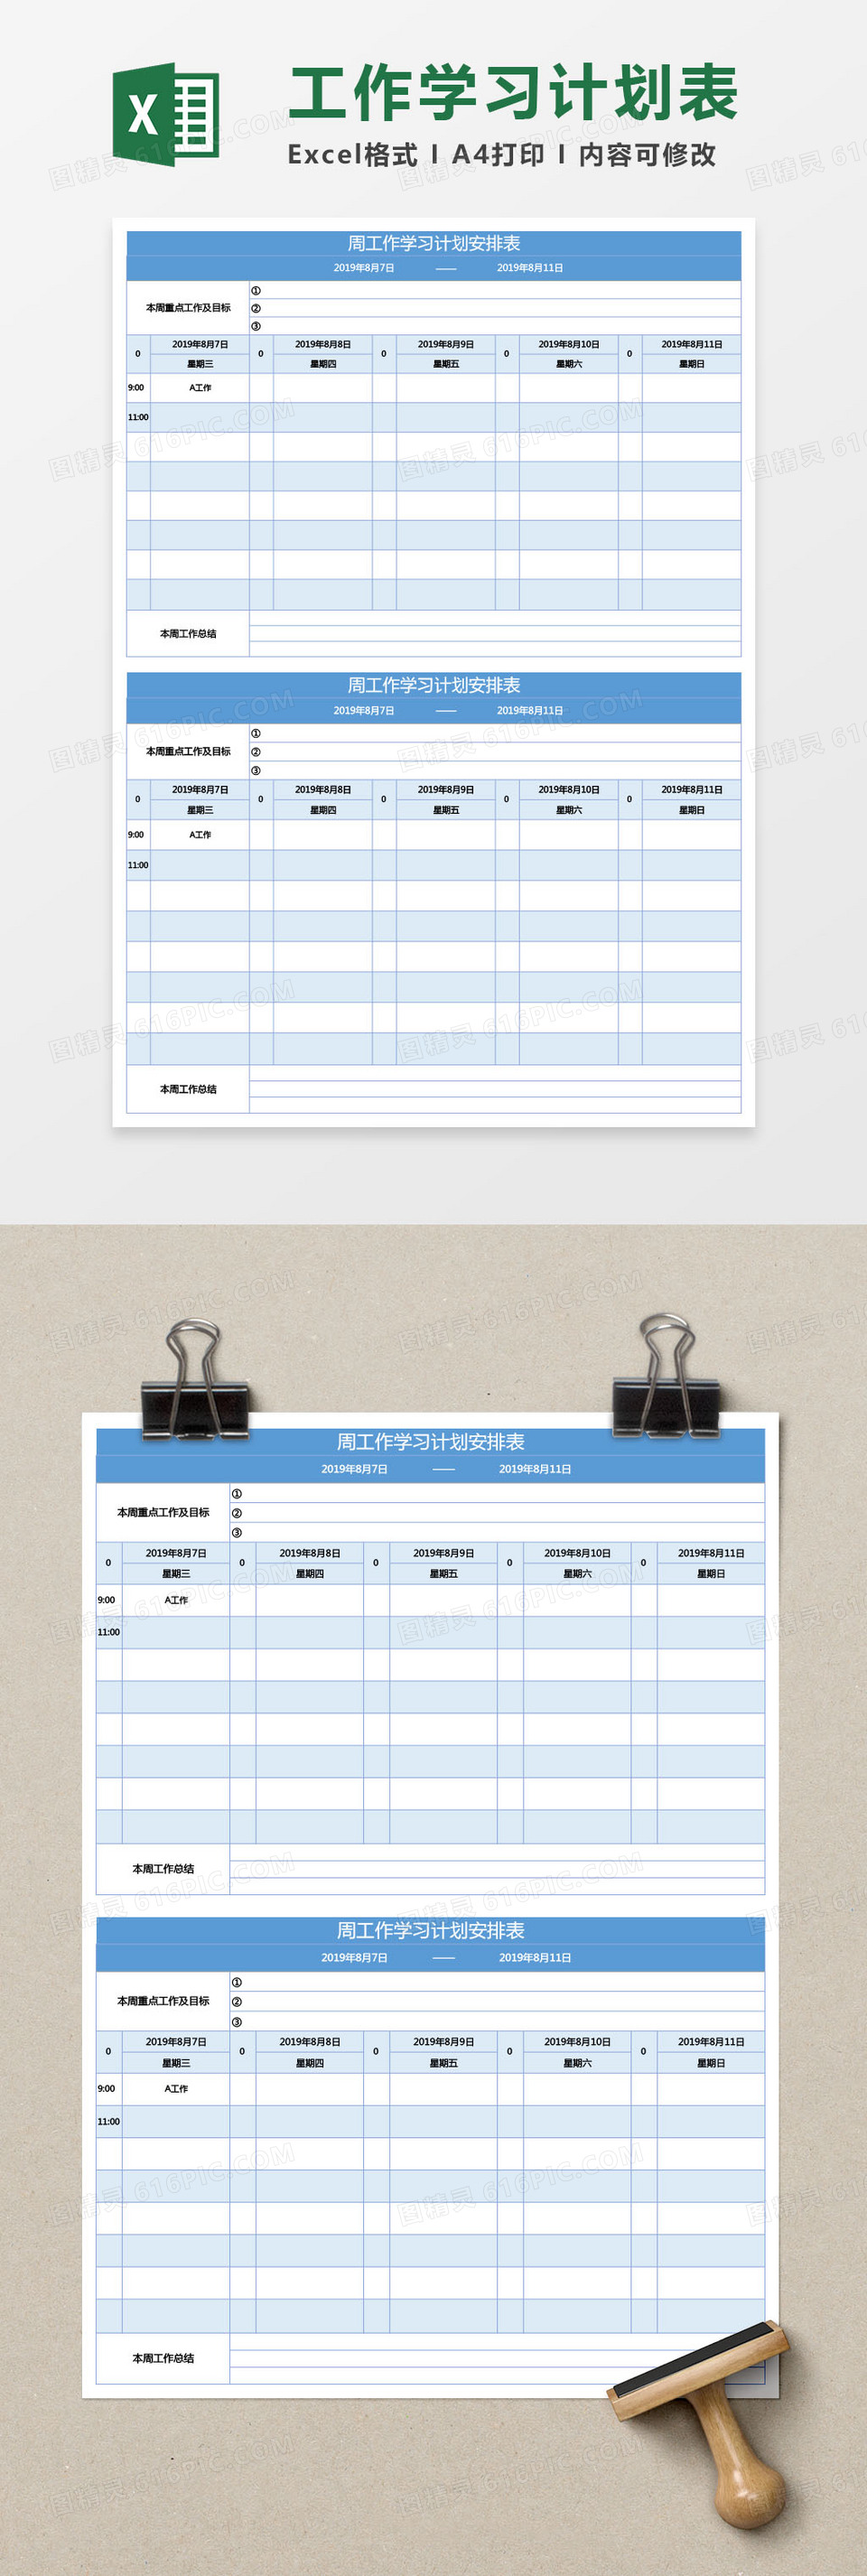 周工作学习计划表Excel模板